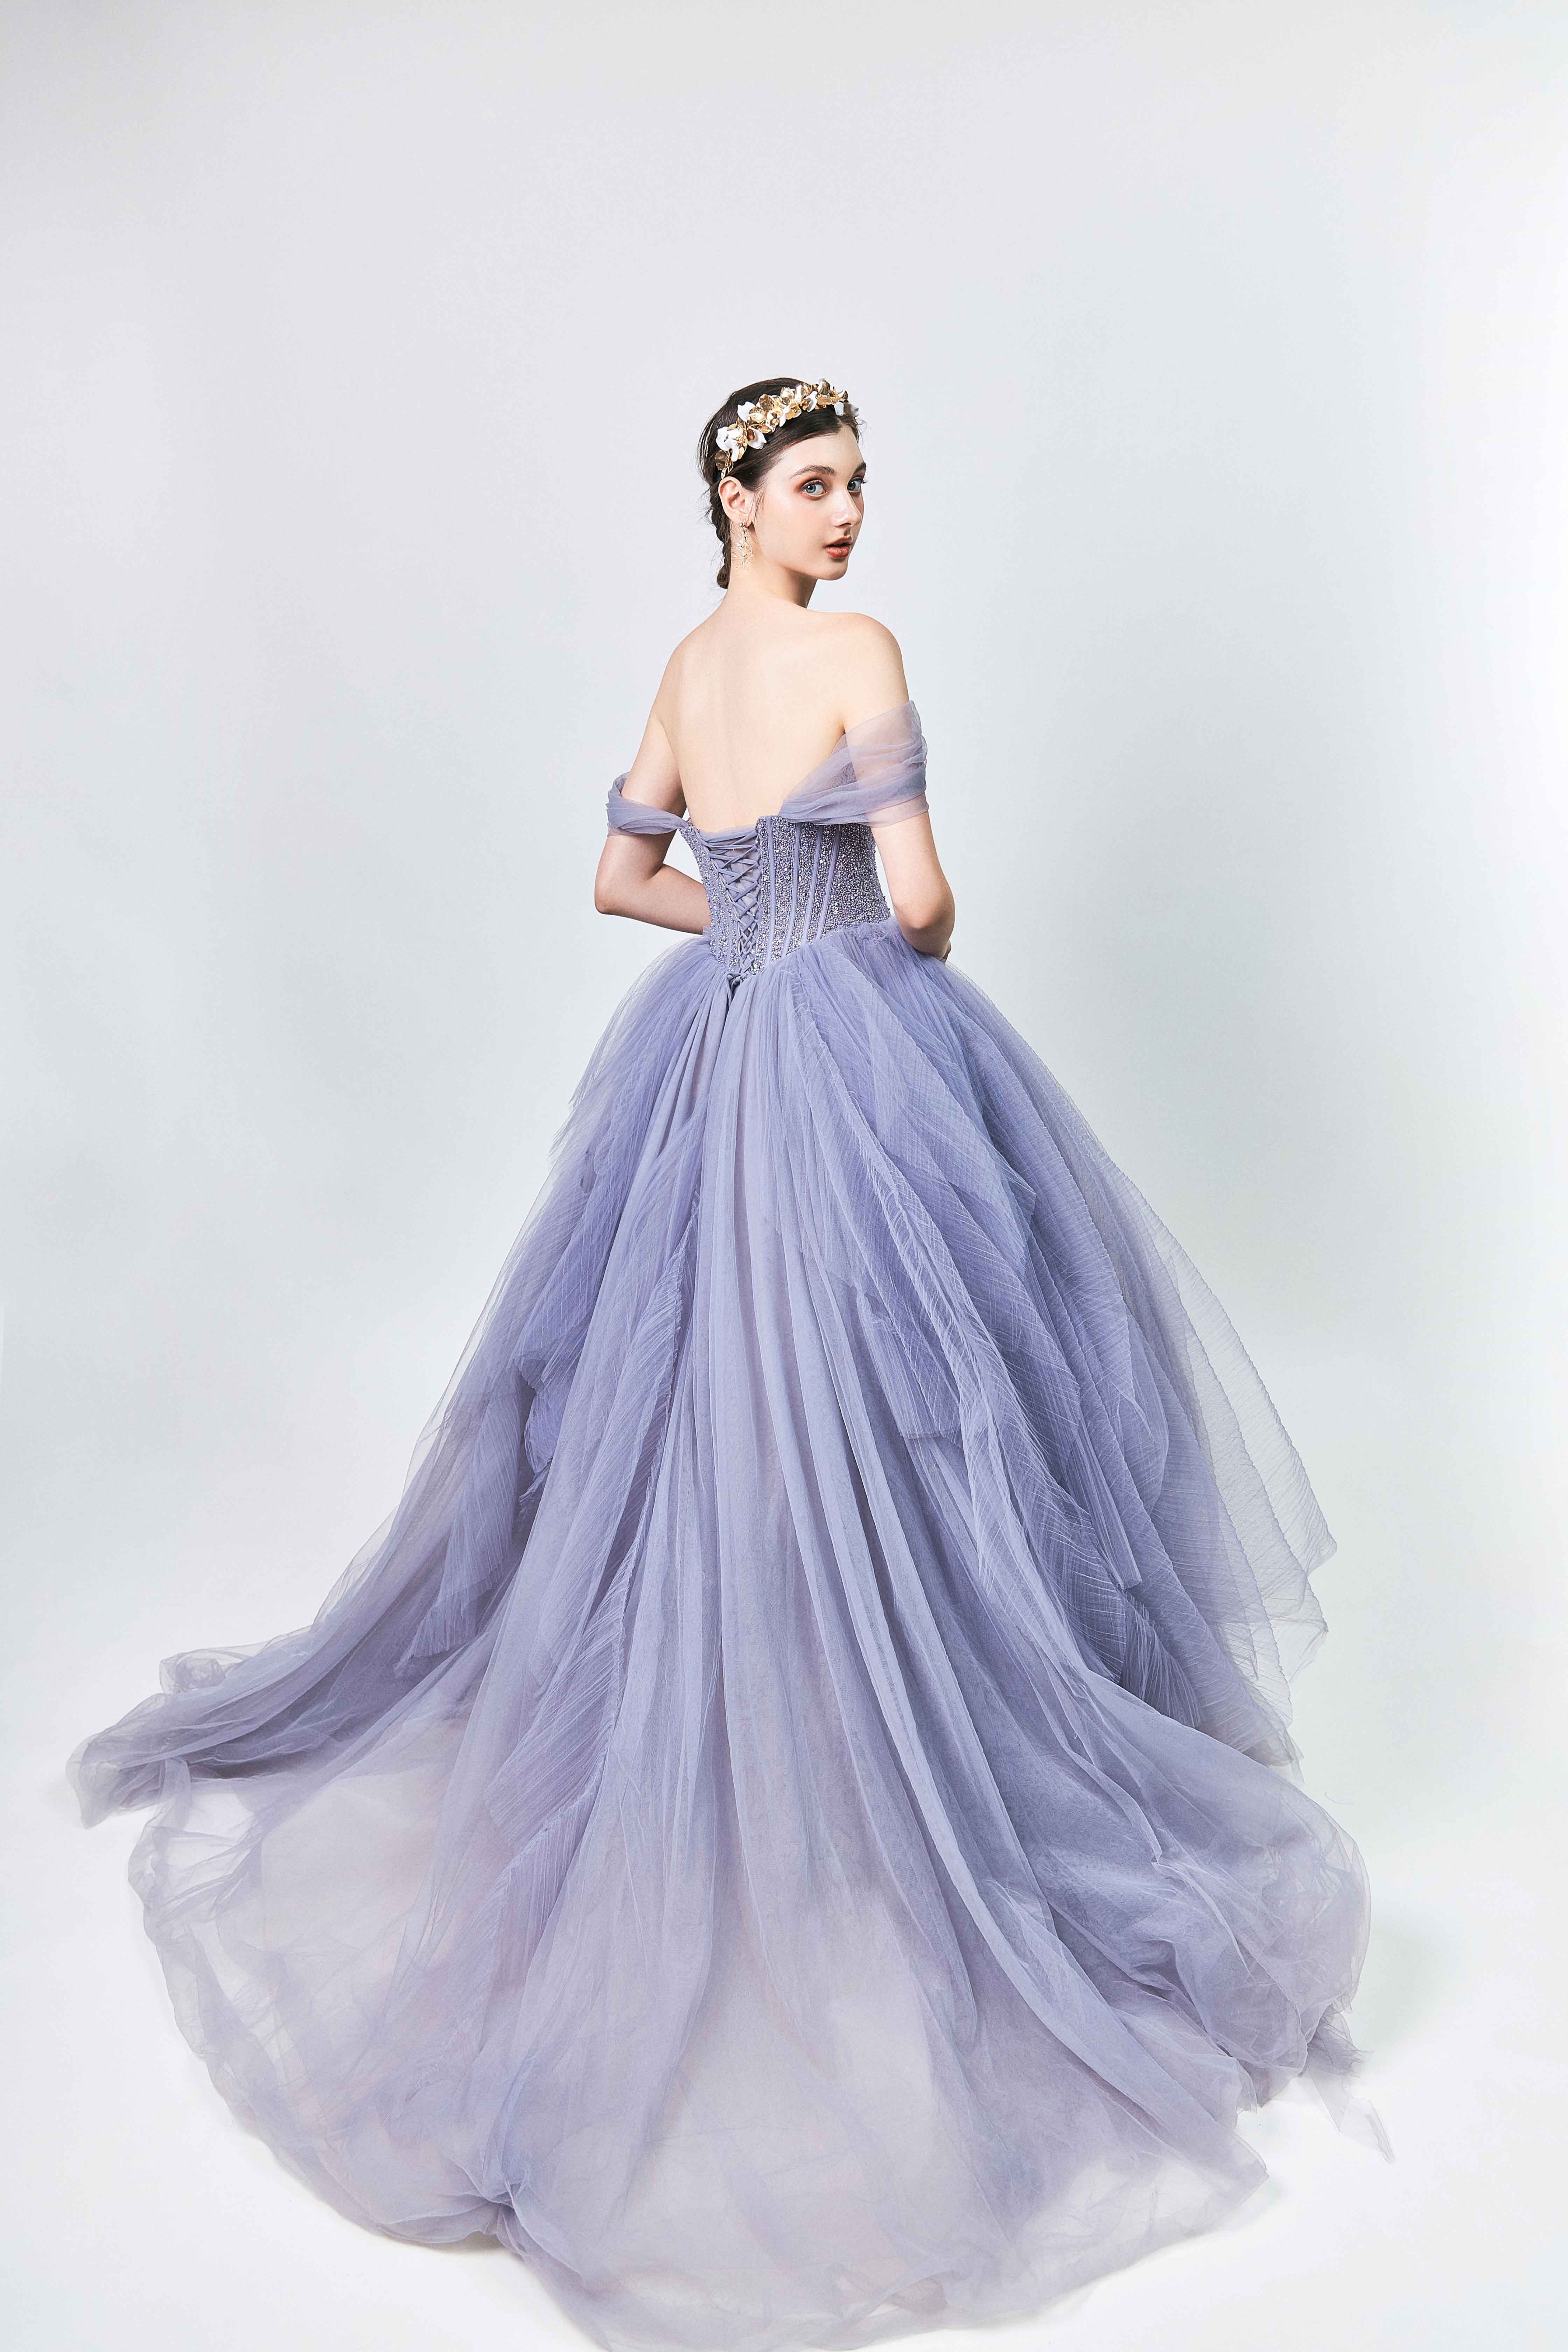 S.A. Bridal全新晚裝及婚紗系列一覽